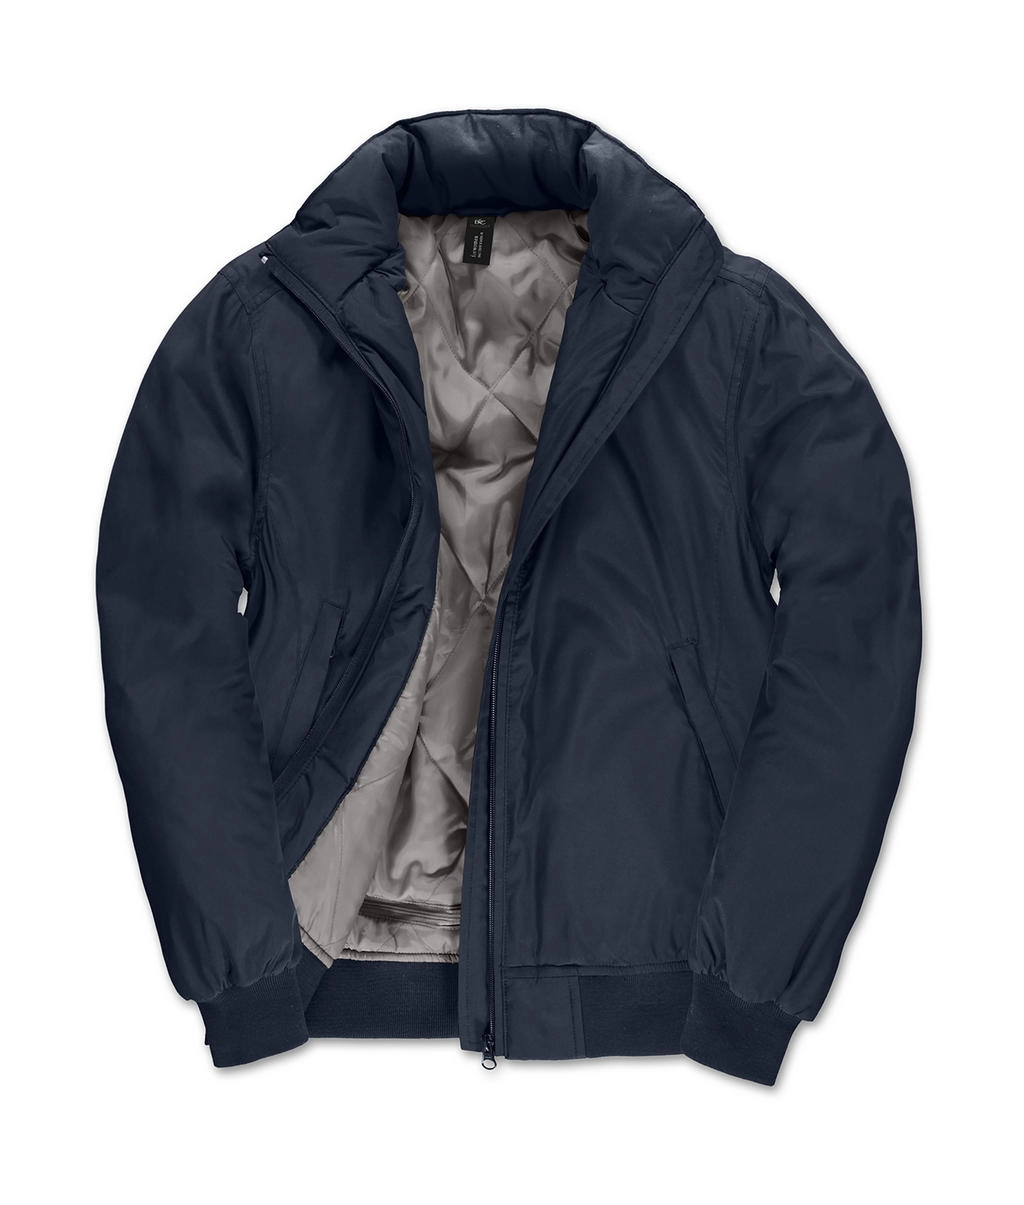 Crew Bomber/women Jacket zum Besticken und Bedrucken in der Farbe Navy/Warm Grey mit Ihren Logo, Schriftzug oder Motiv.